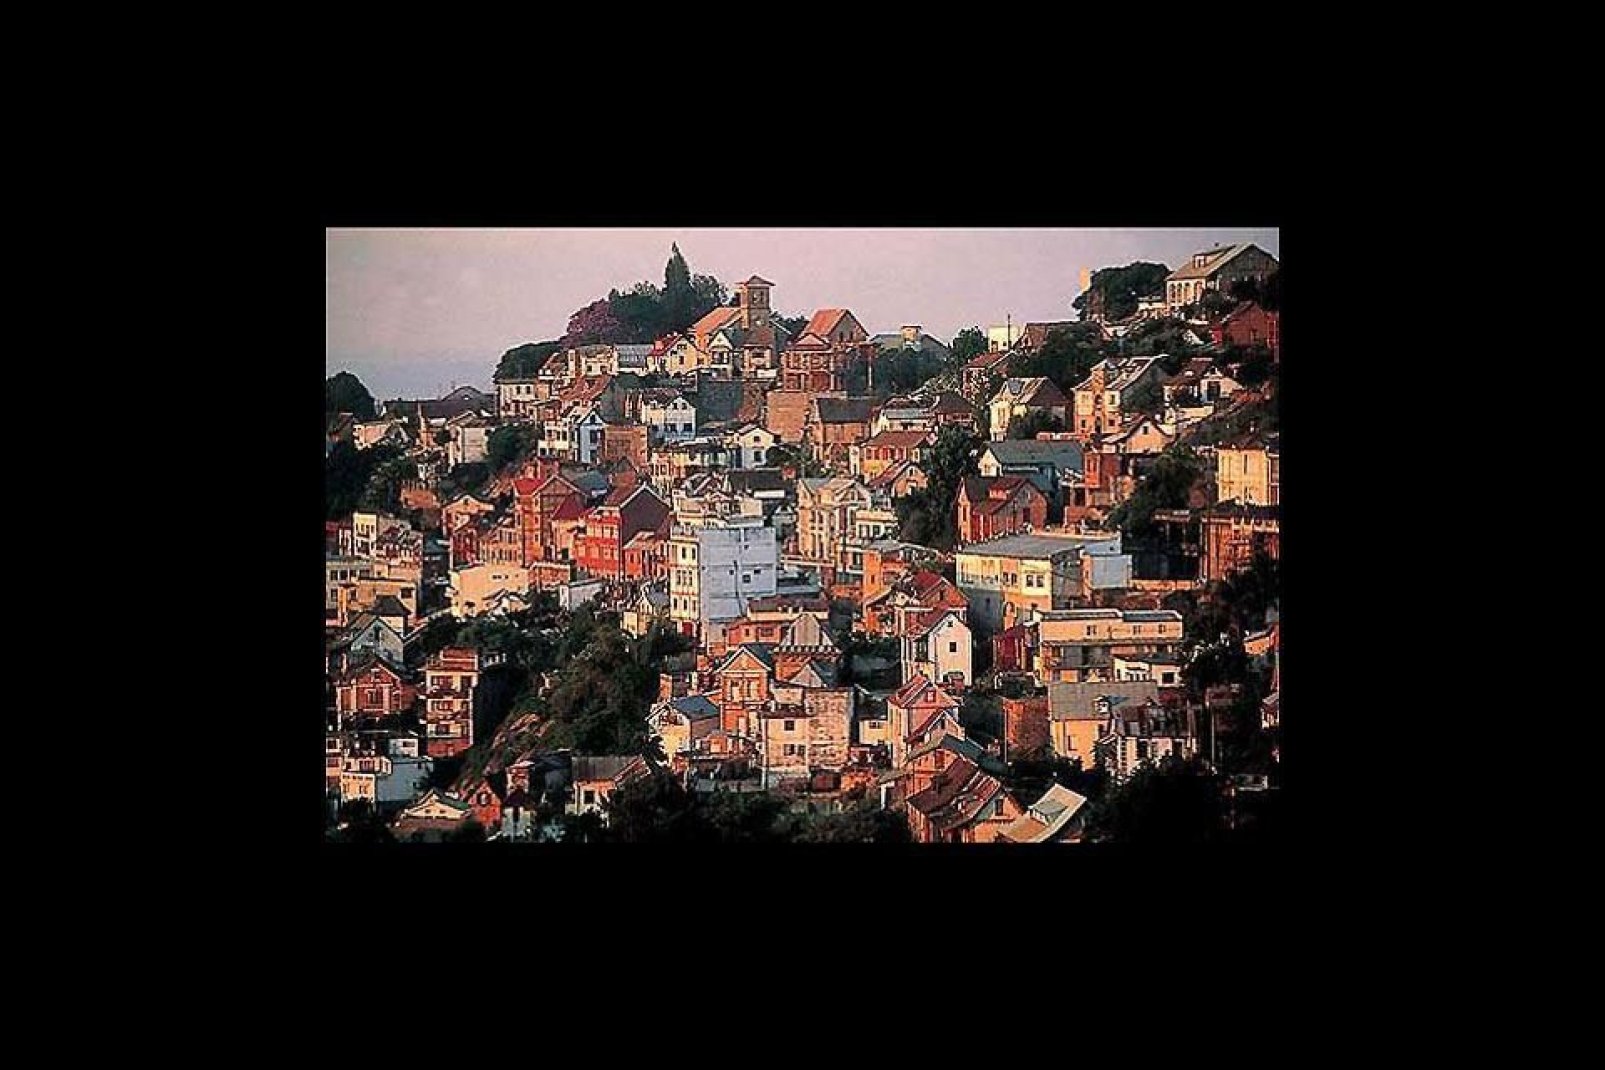 Ancienne place forte, Antananarivo est bâtie sur douze collines différentes, ce qui lui confèrent ce relief si particulier.